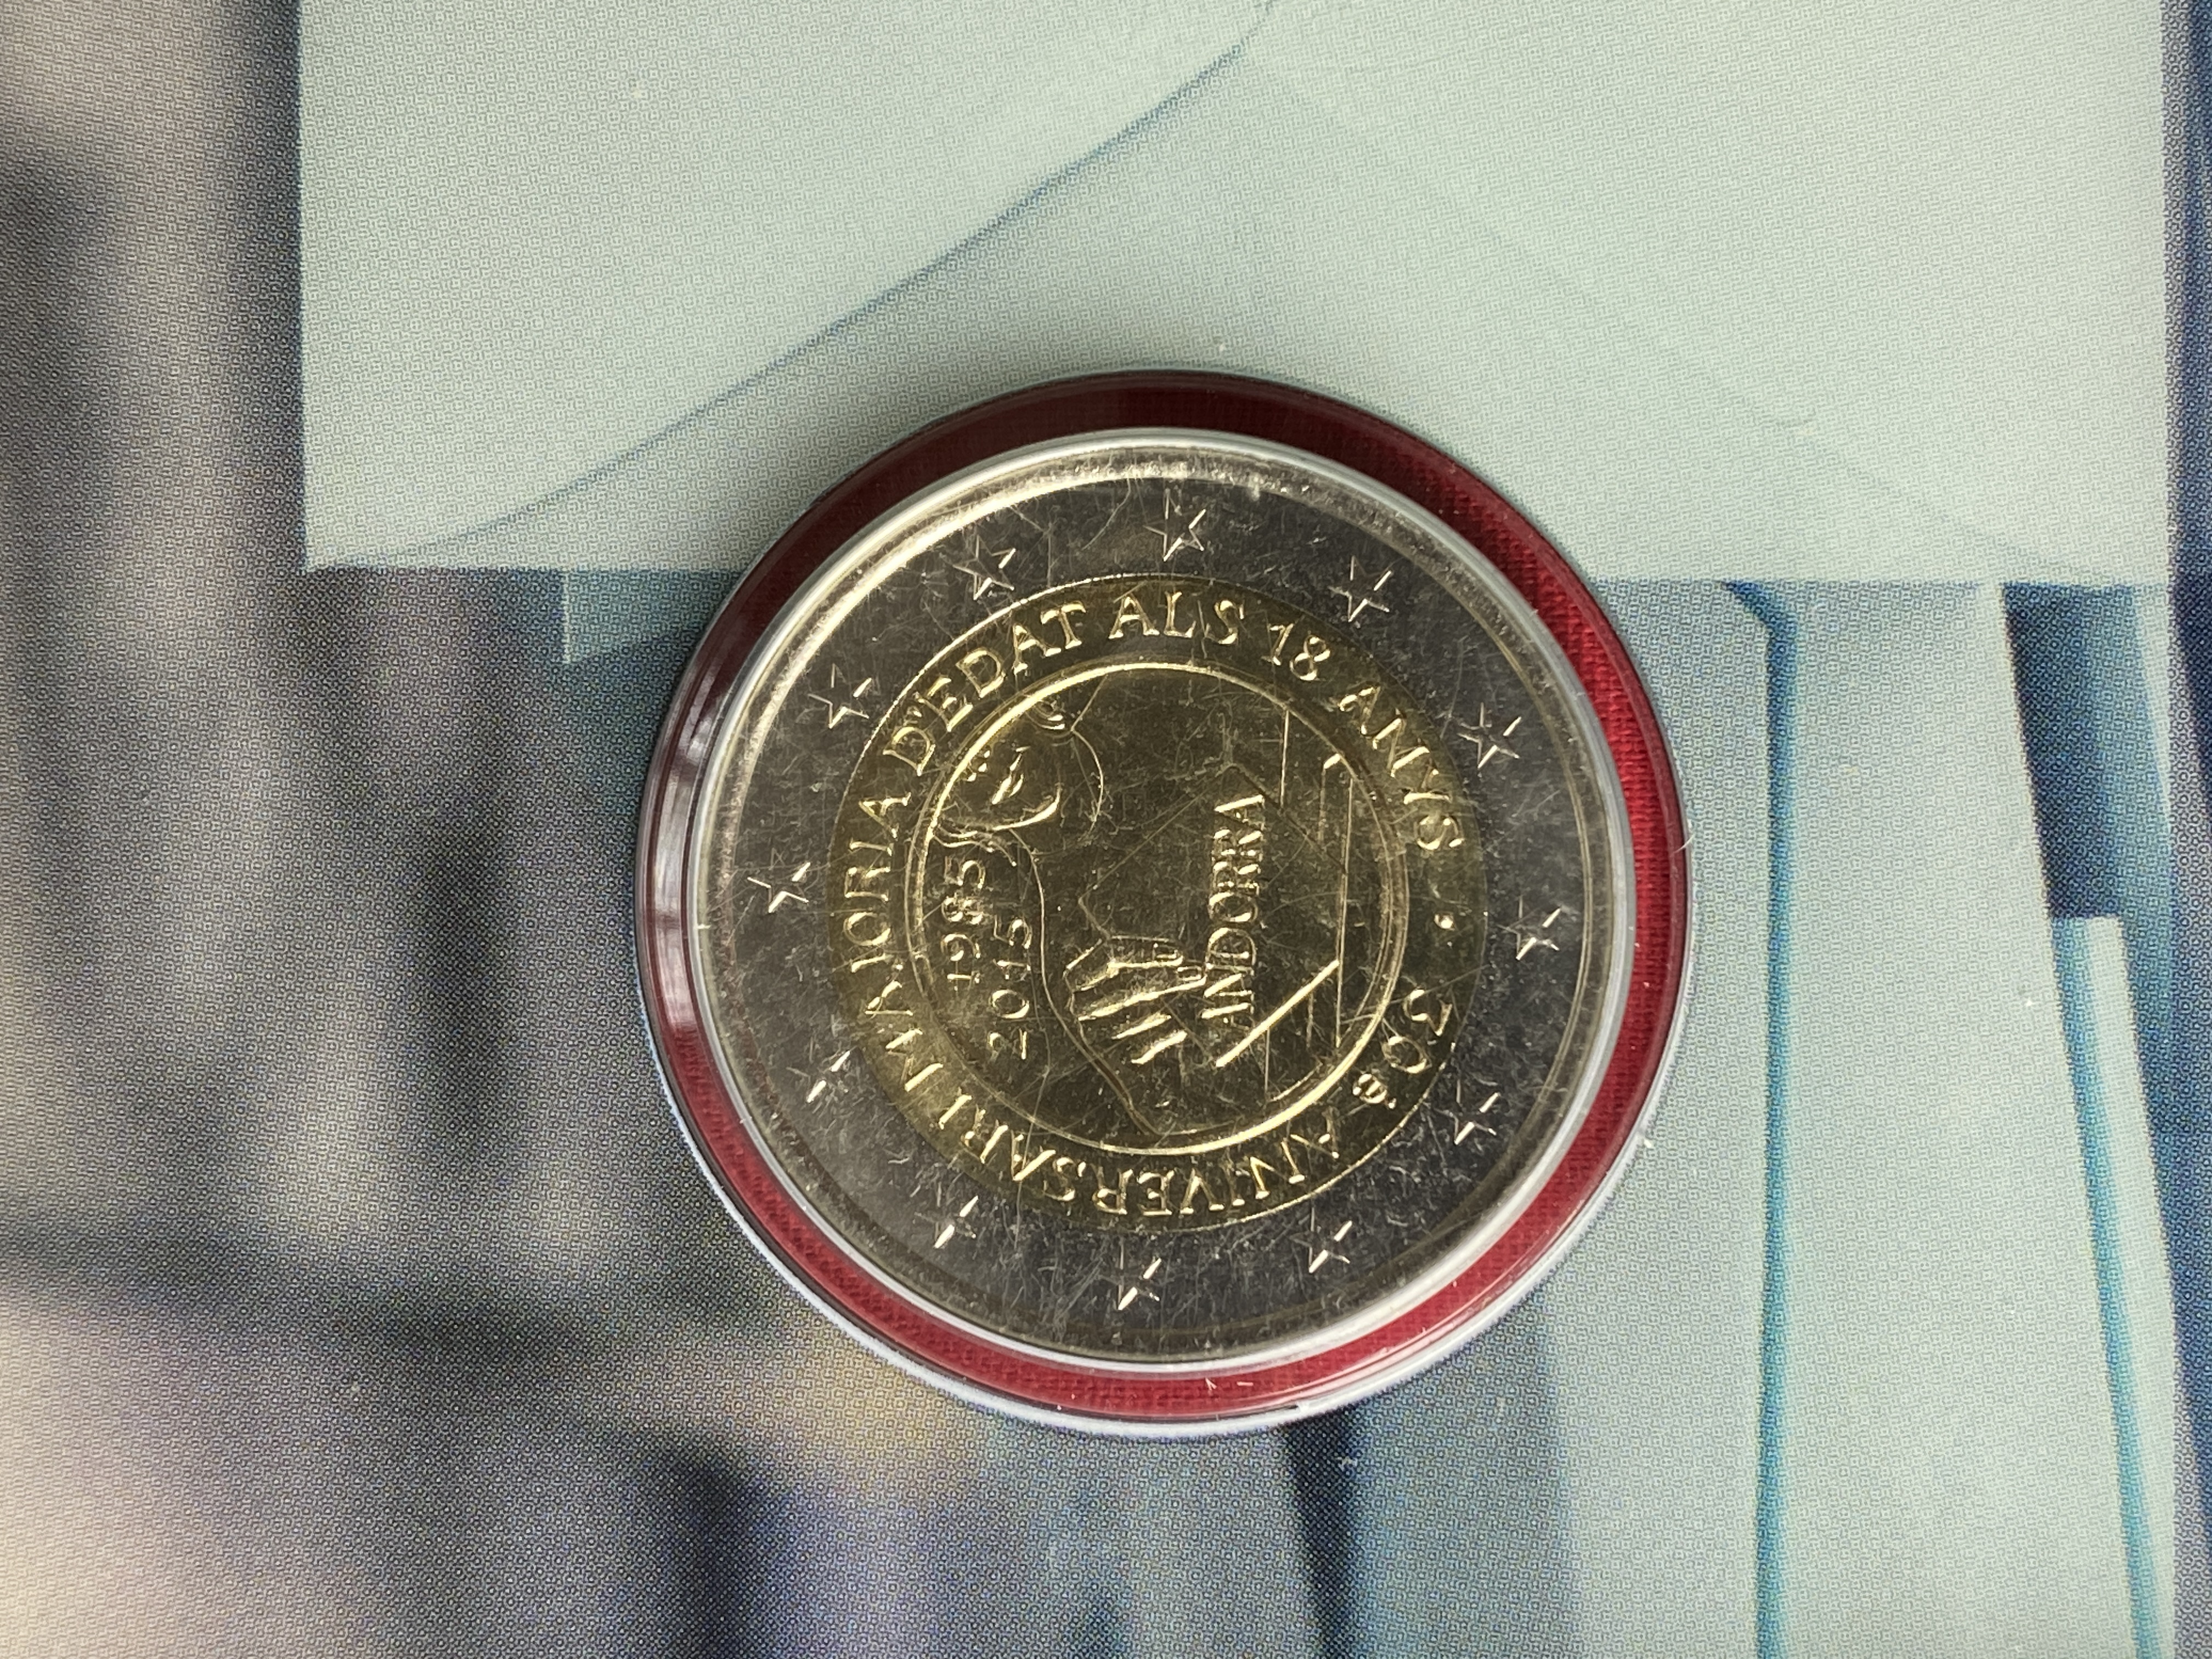 Andorra 2015 - 2 Euro Münze „30 Jahre Volljährigkeit für 18-Jährige“ 